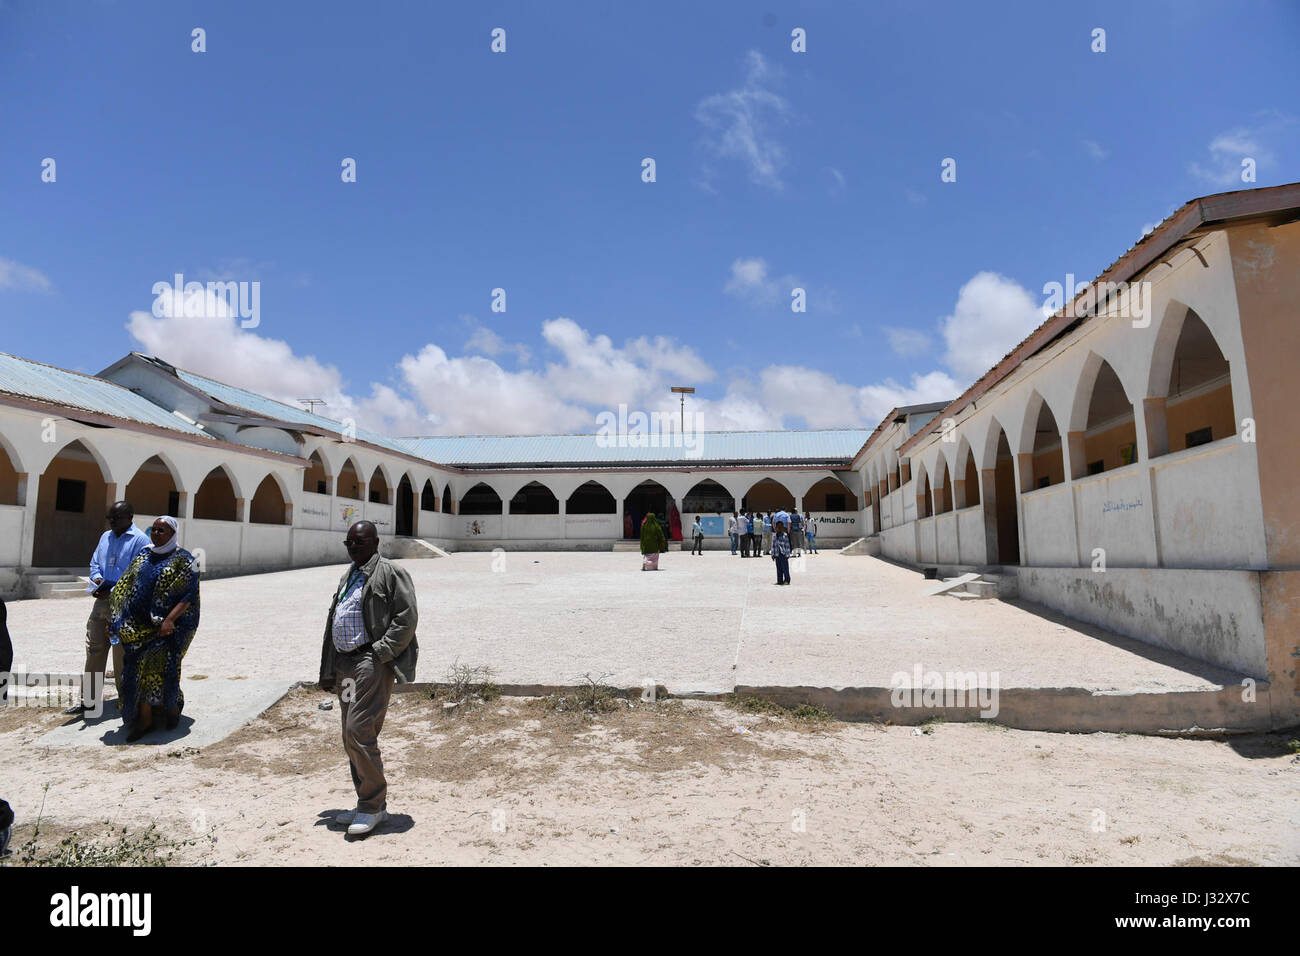 Die Website einer Schule mit Unterstützung der Mission der Afrikanischen Union in Somalia (AMISOM) in Mogadischu Wadajir Bezirk, am 24. März 2017 errichtet. AMISOM Foto / Omar Abdisalan Stockfoto